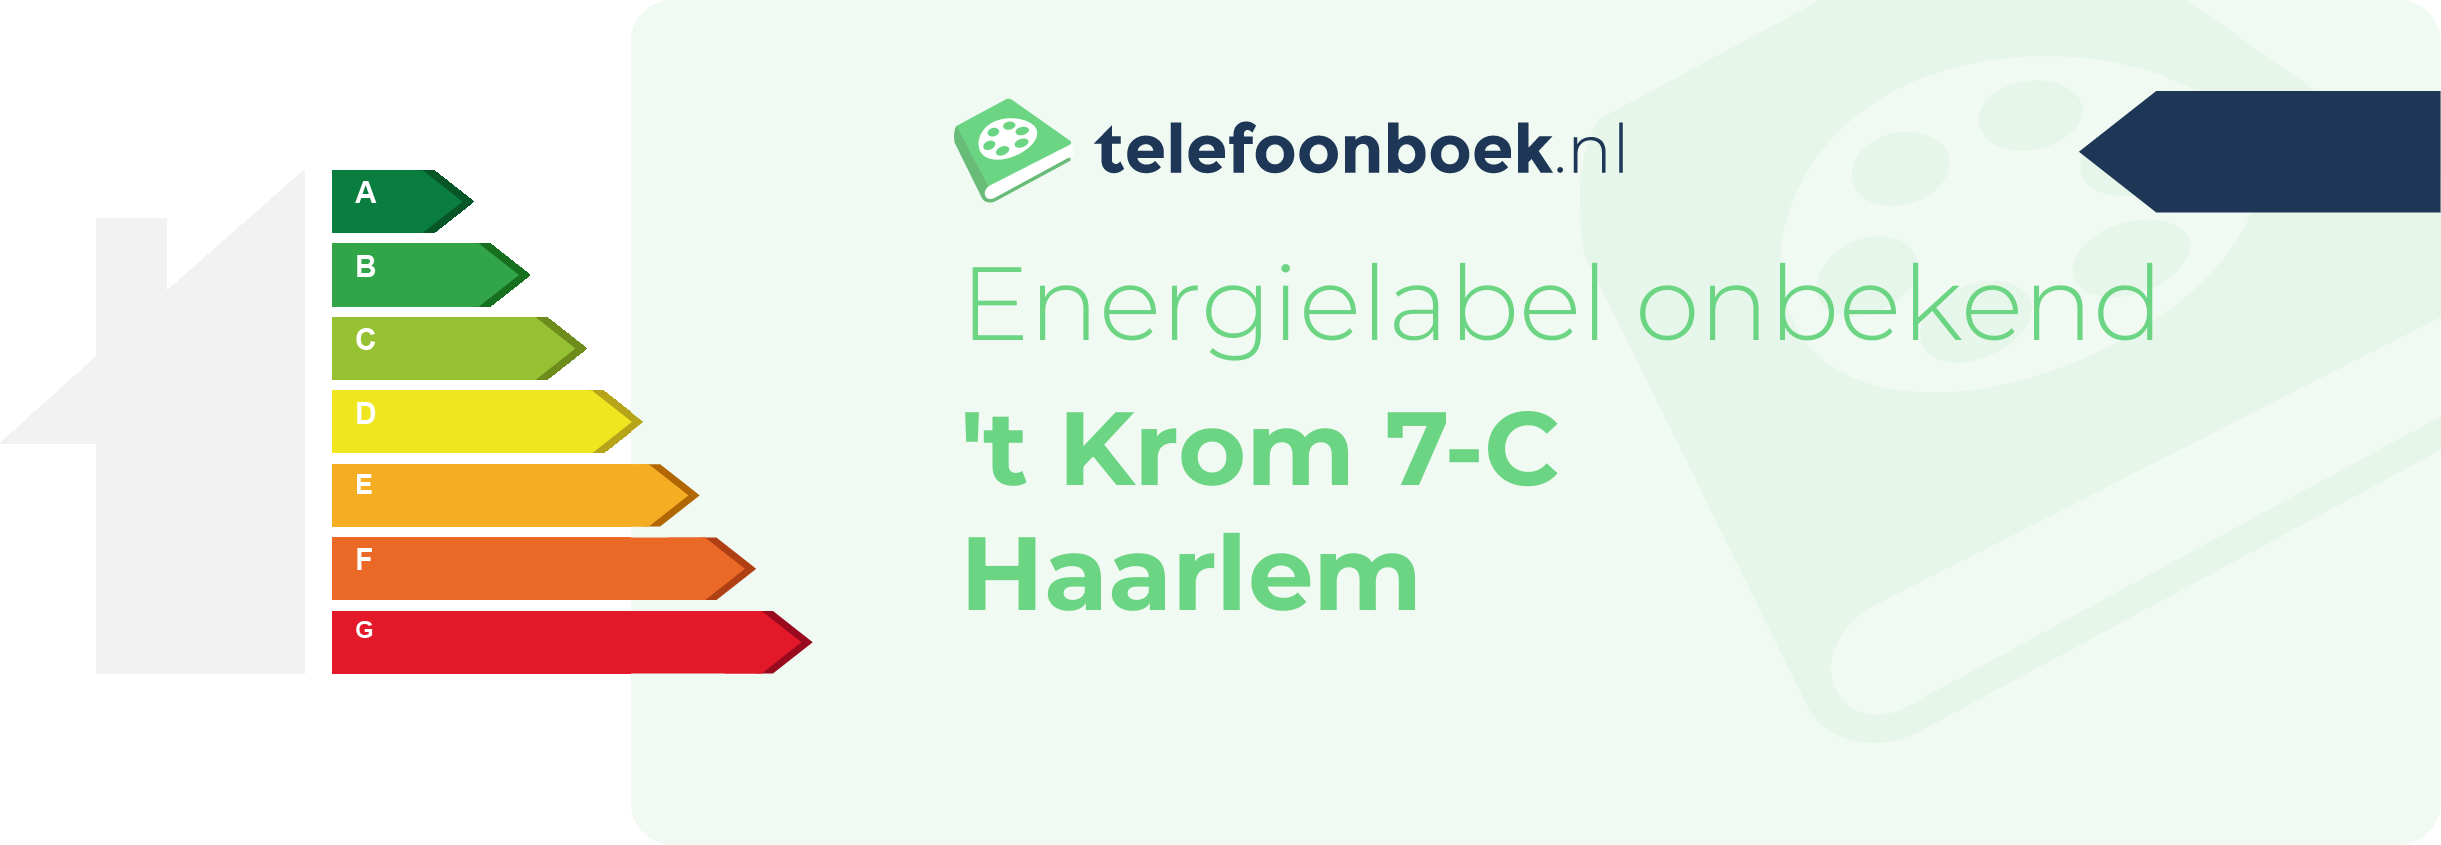 Energielabel 't Krom 7-C Haarlem